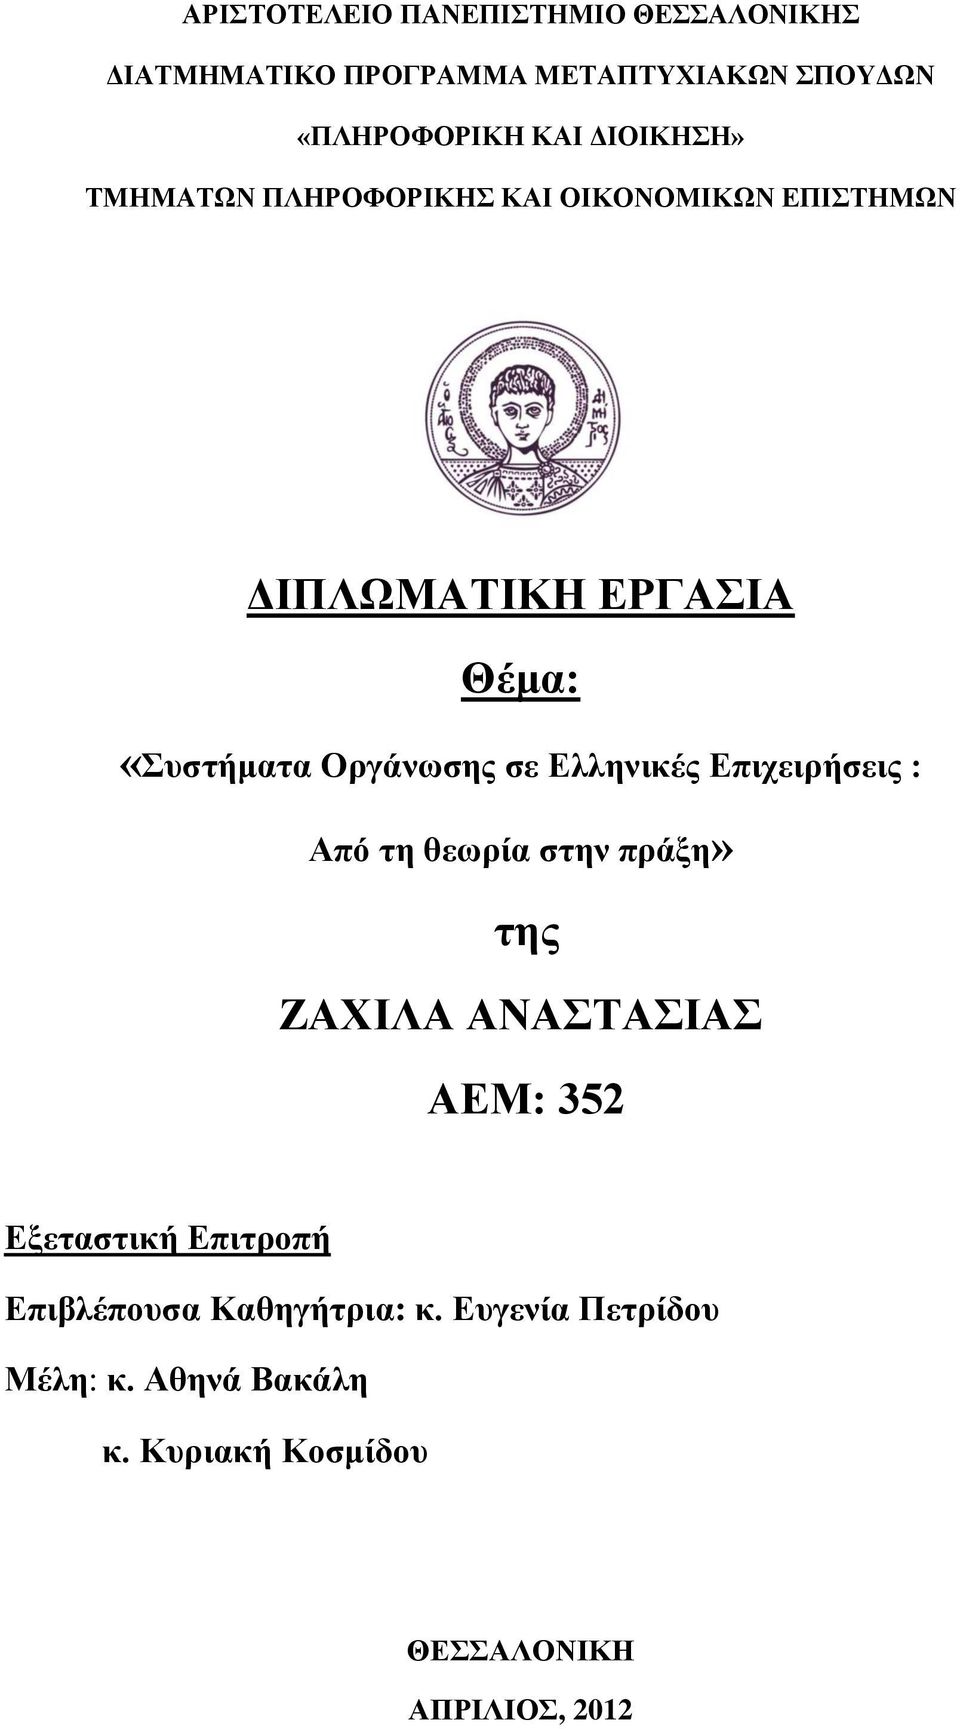 σε Ελληνικές Επιχειρήσεις : Από τη θεωρία στην πράξη» της ΖΑΧΙΛΑ ΑΝΑΣΤΑΣΙΑΣ ΑΕΜ: 352 Εξεταστική Επιτροπή